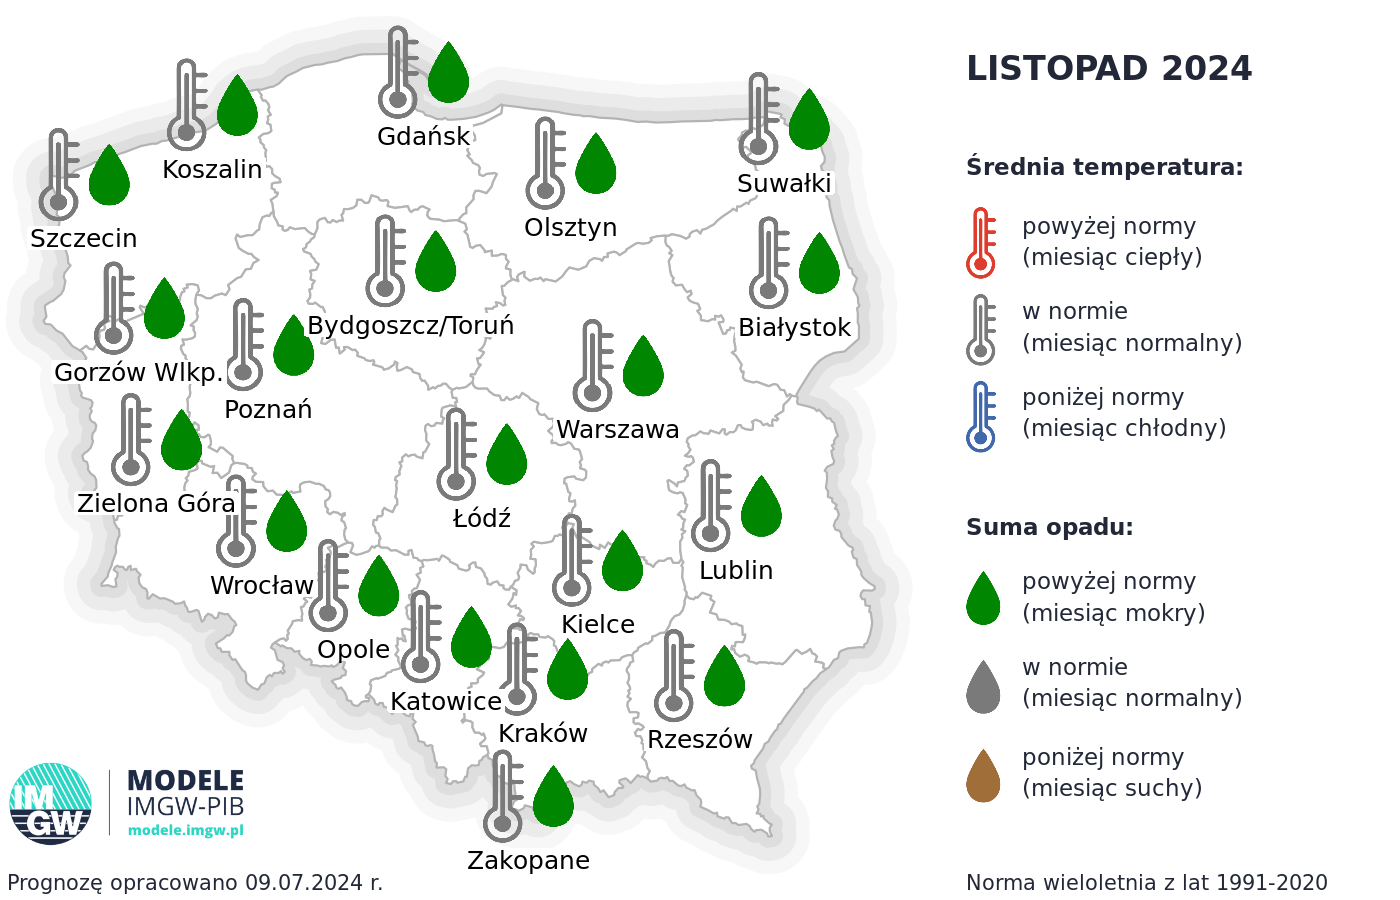 Rys. 4. Prognoza średniej miesięcznej temperatury powietrza i miesięcznej sumy opadów atmosferycznych na listopad 2024 r. dla wybranych miast w Polsce